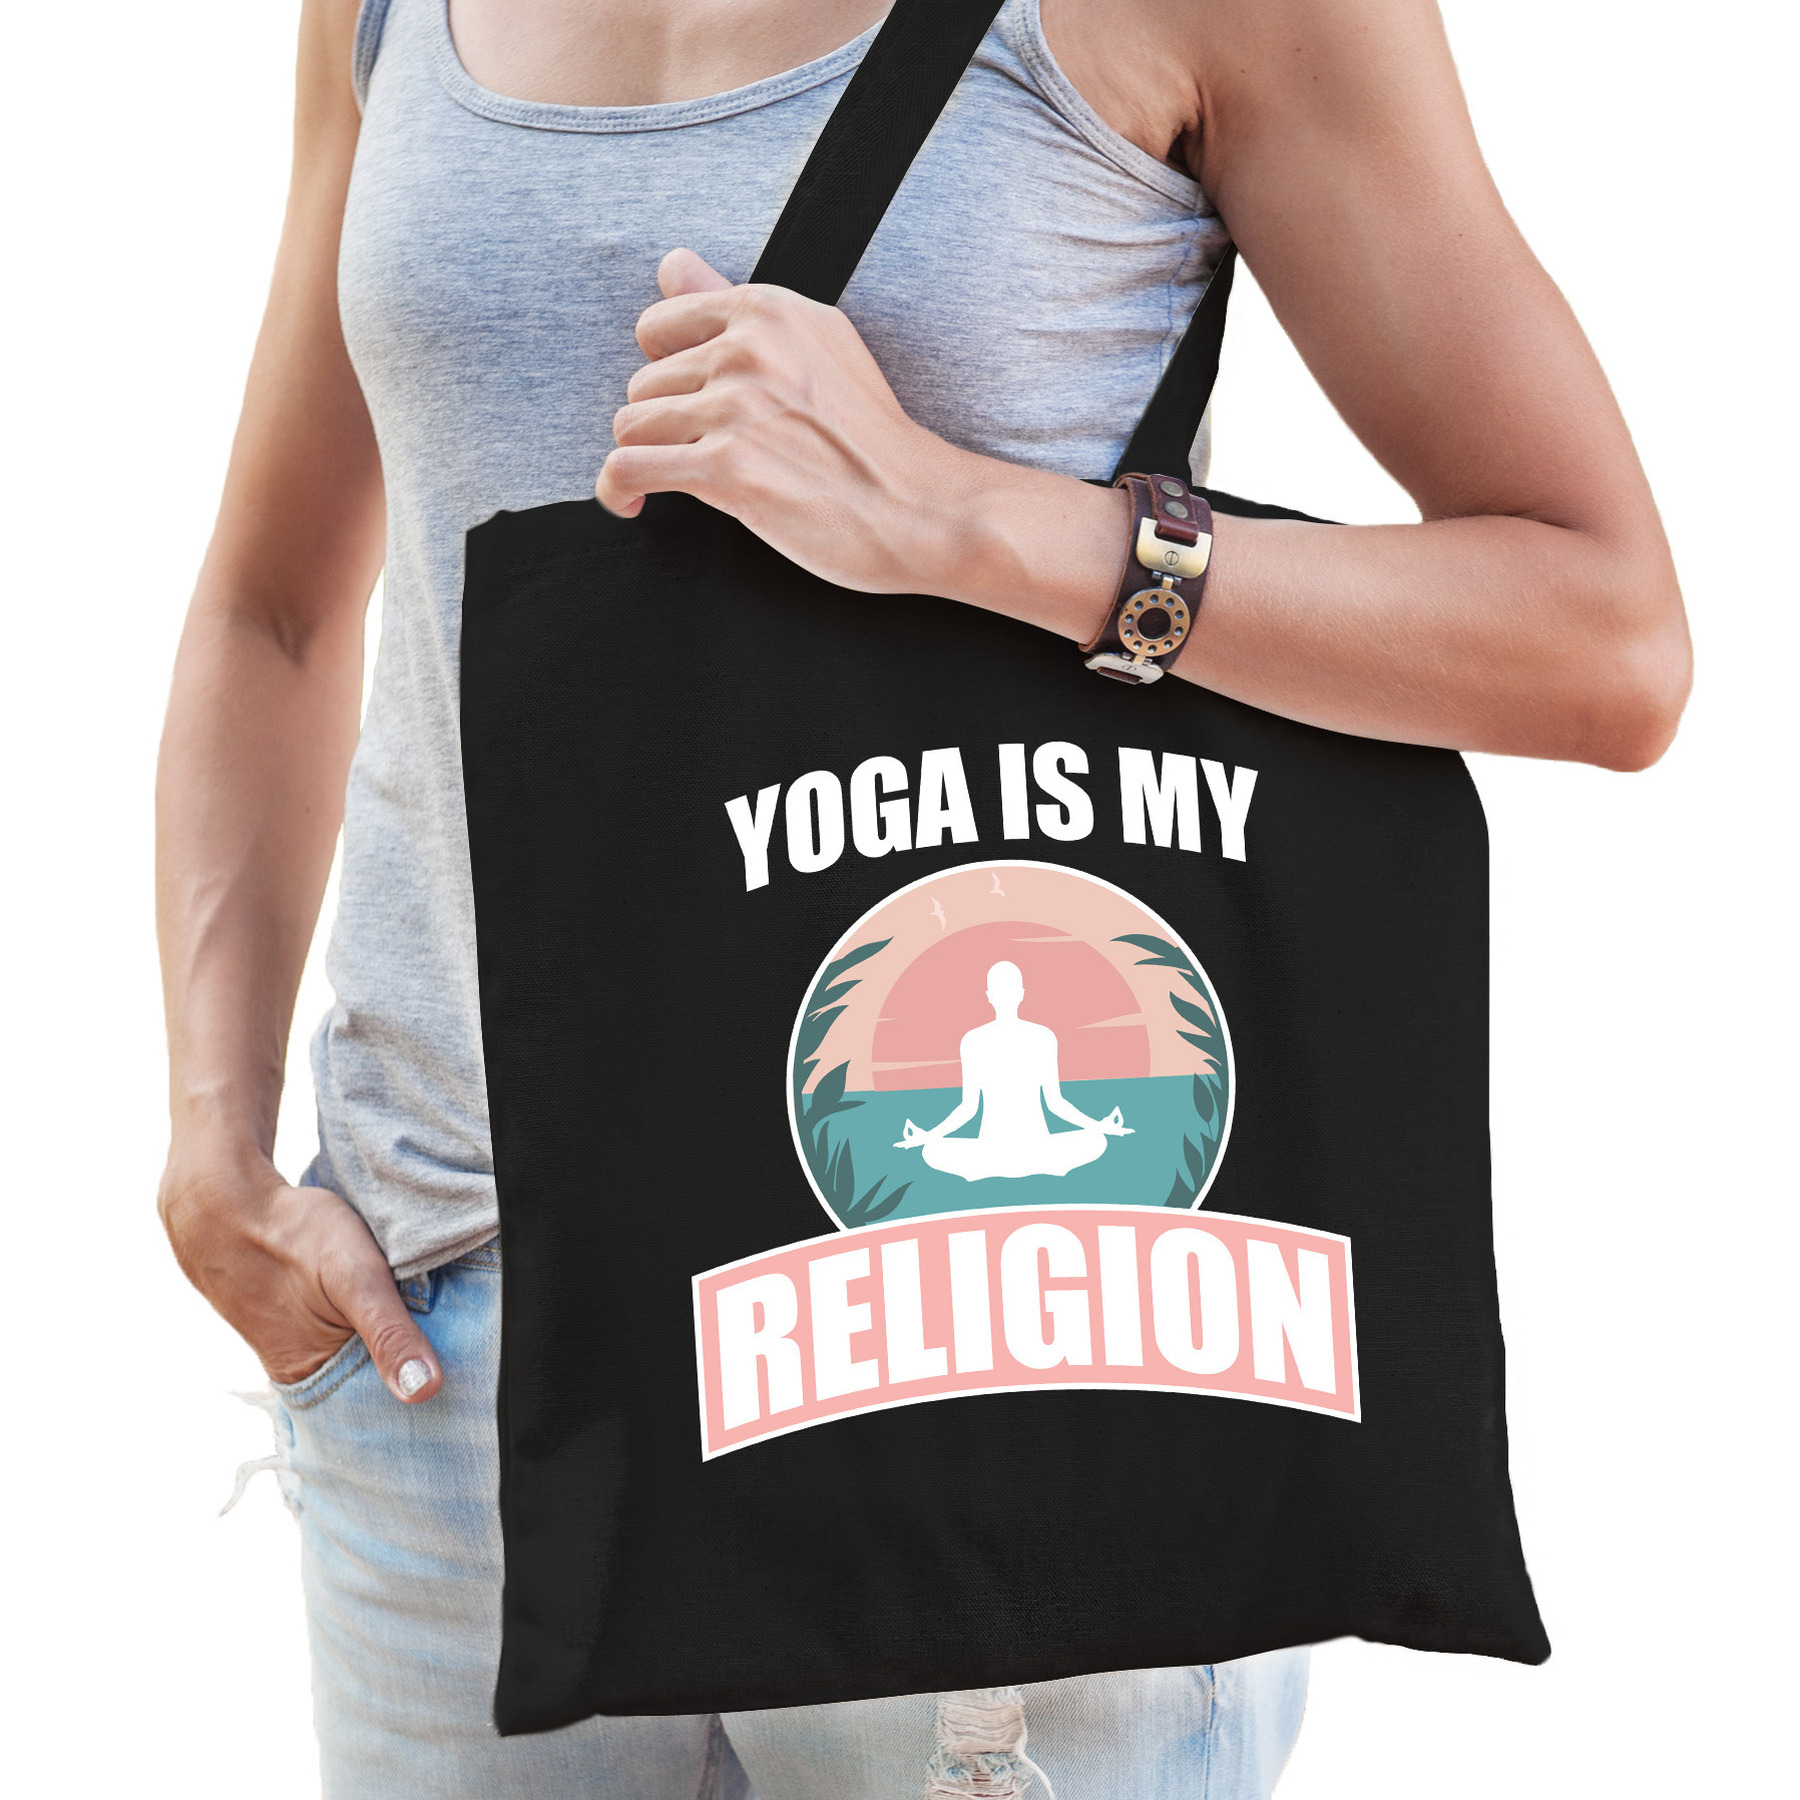 Yoga is my religion katoenen tas zwart voor volwassenen sport-hobby tasjes